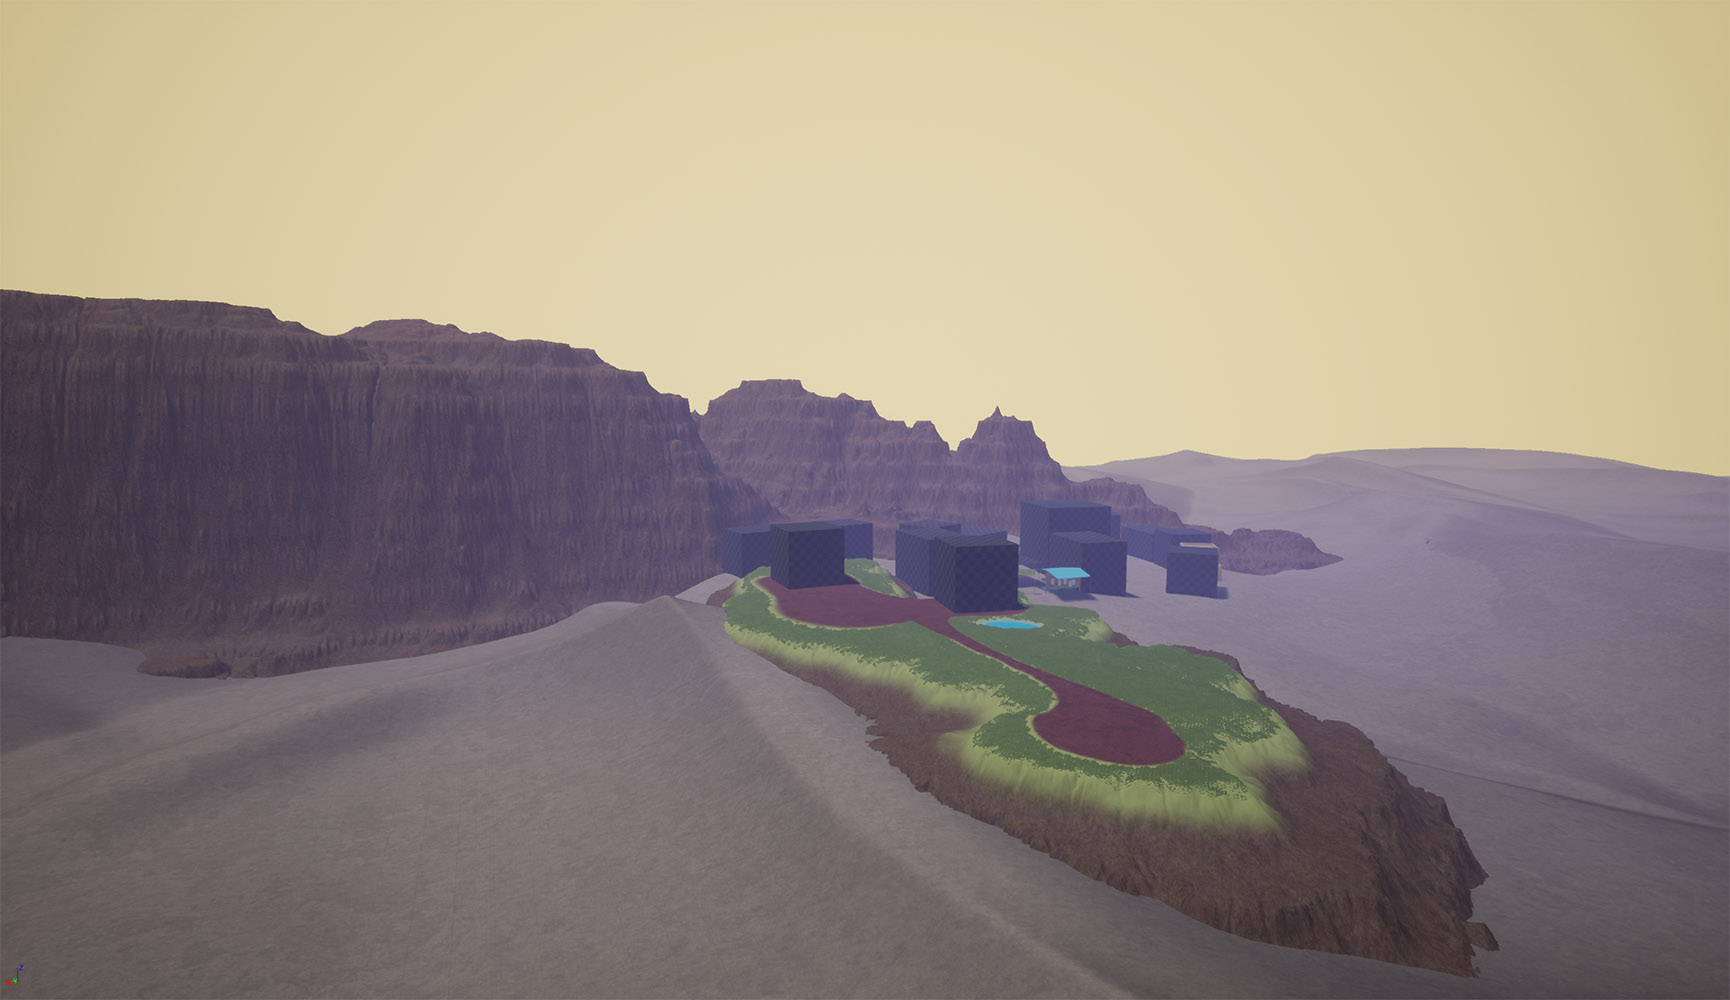 game screenshot, a town in a desert